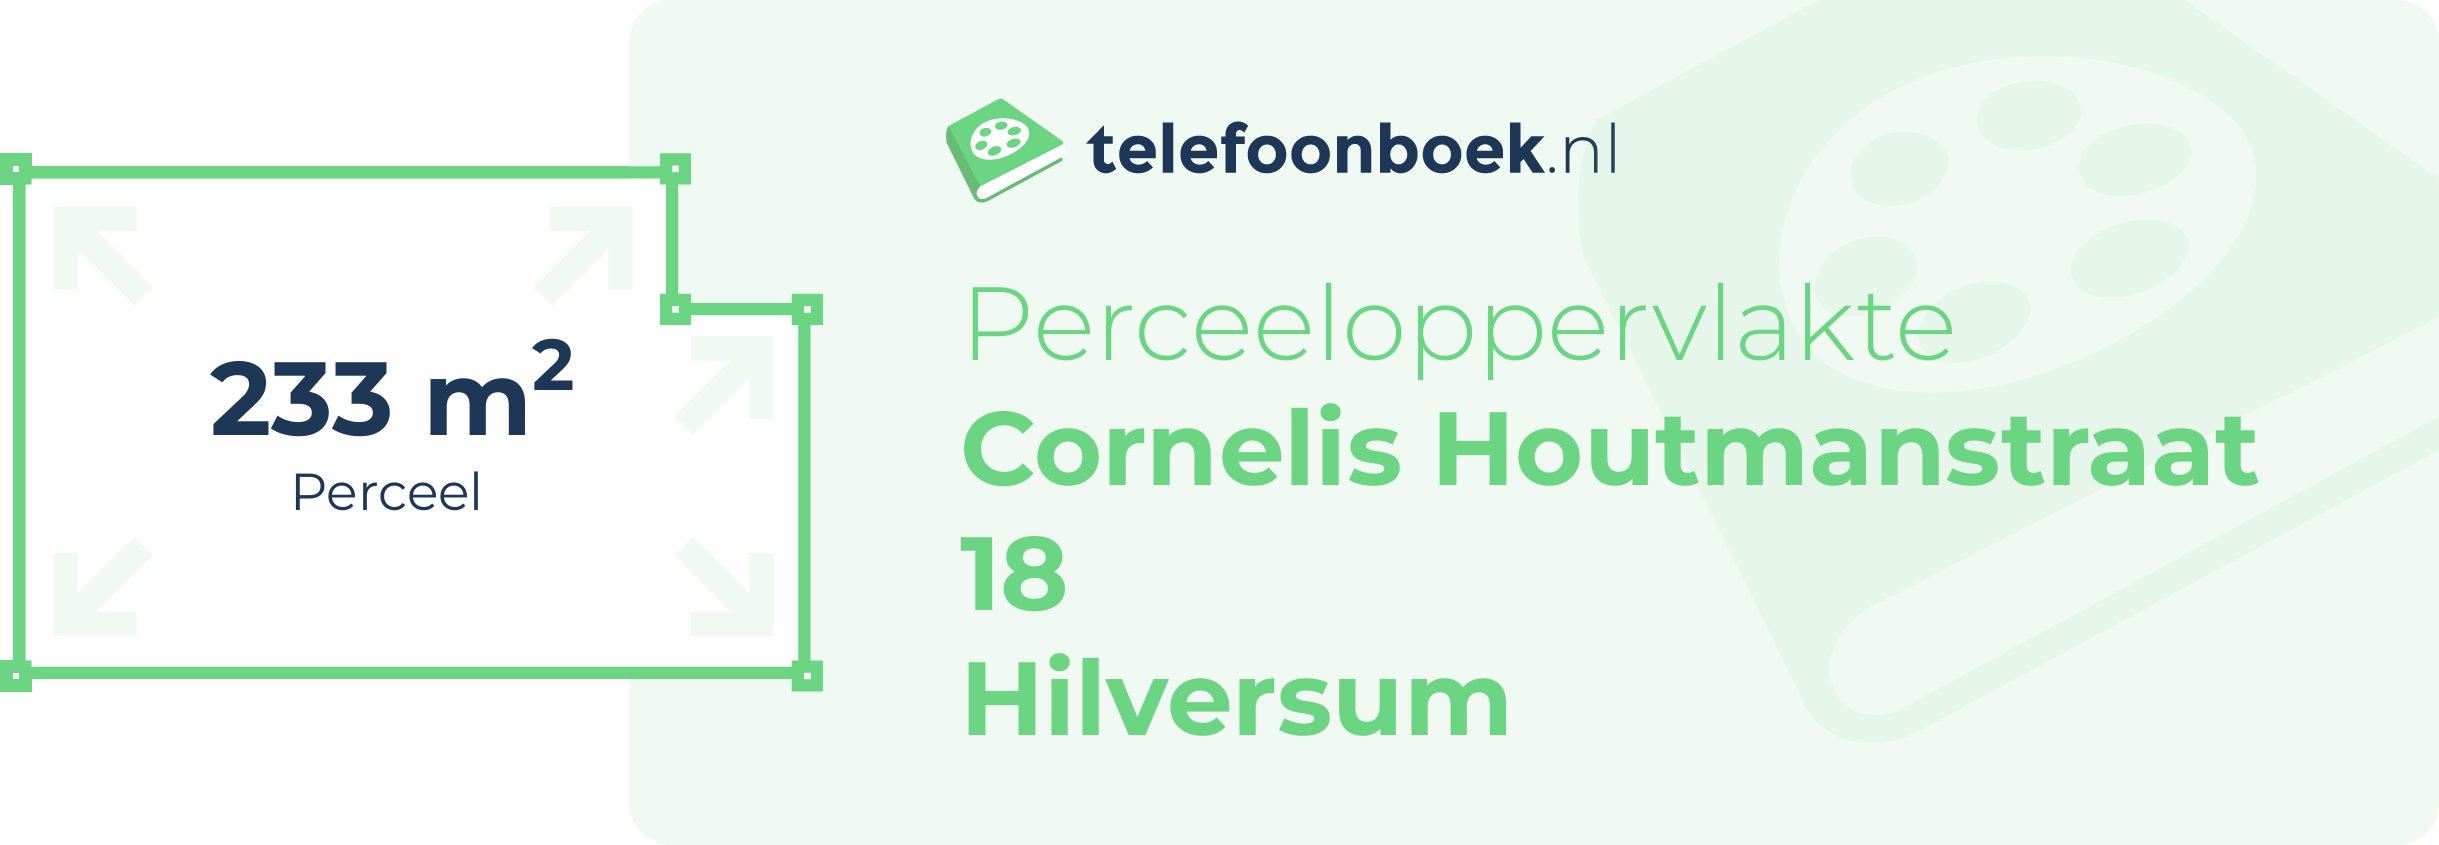 Perceeloppervlakte Cornelis Houtmanstraat 18 Hilversum